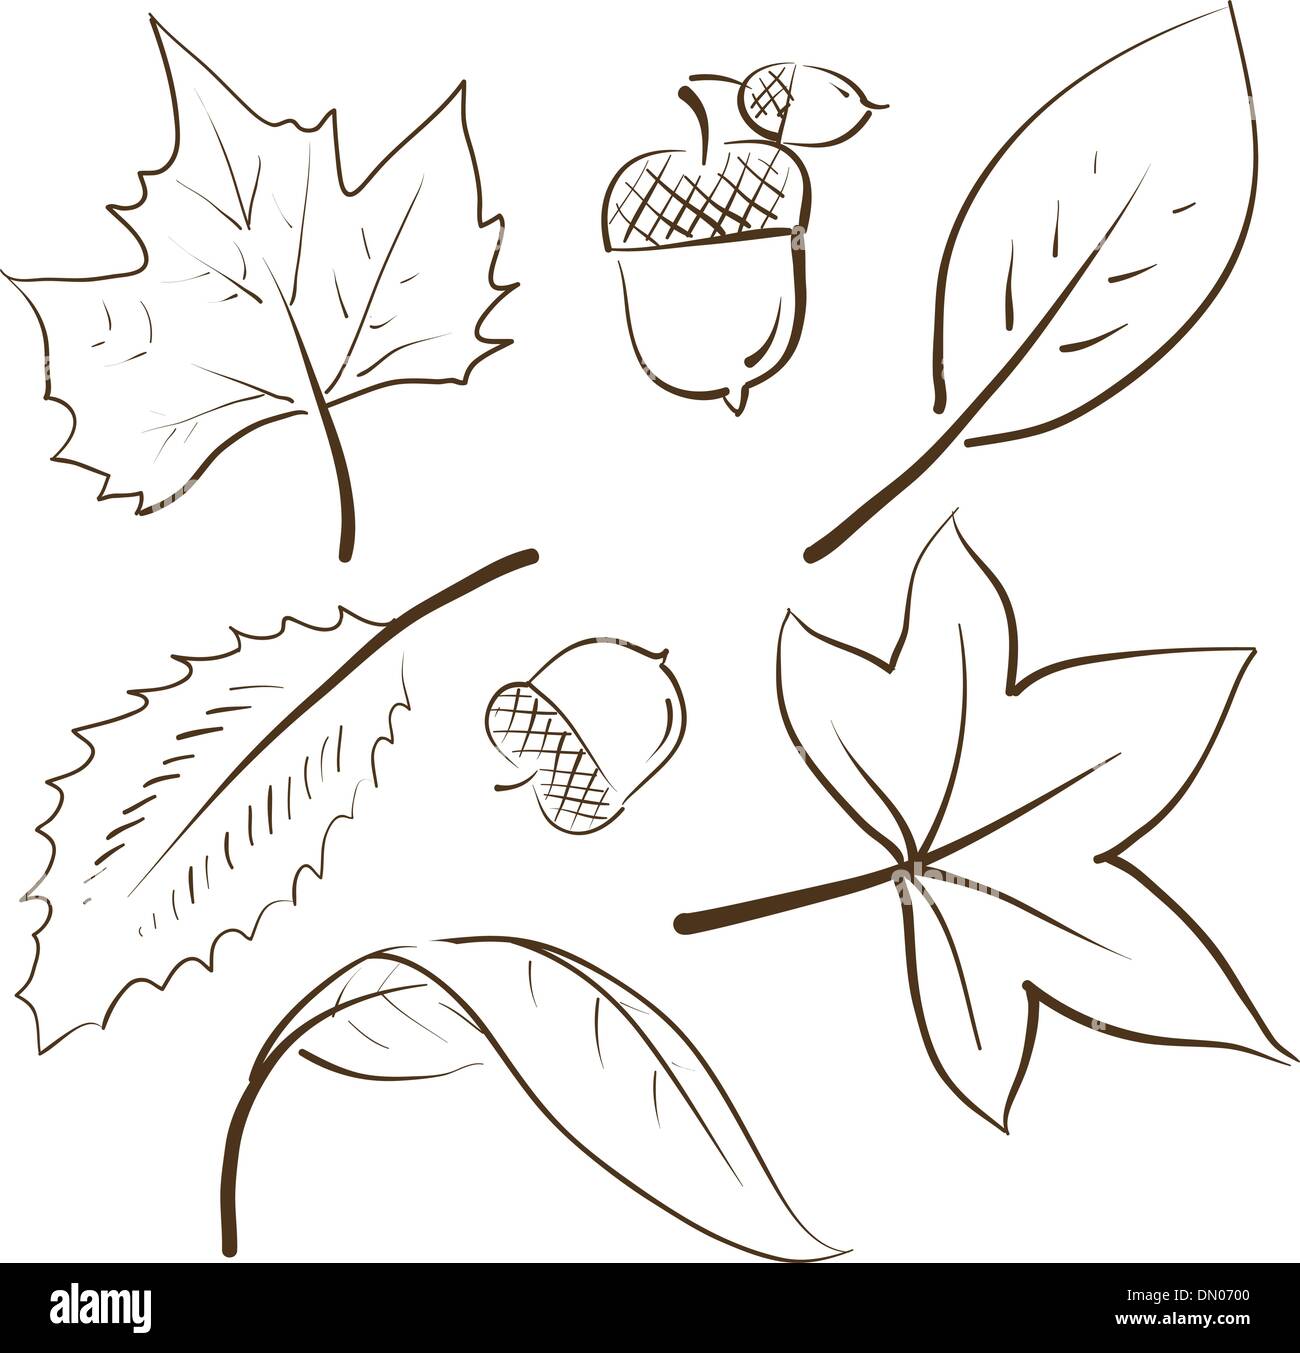 Hand drawn forest leaves Autumn leaf sketch  Stock Illustration  68568802  PIXTA